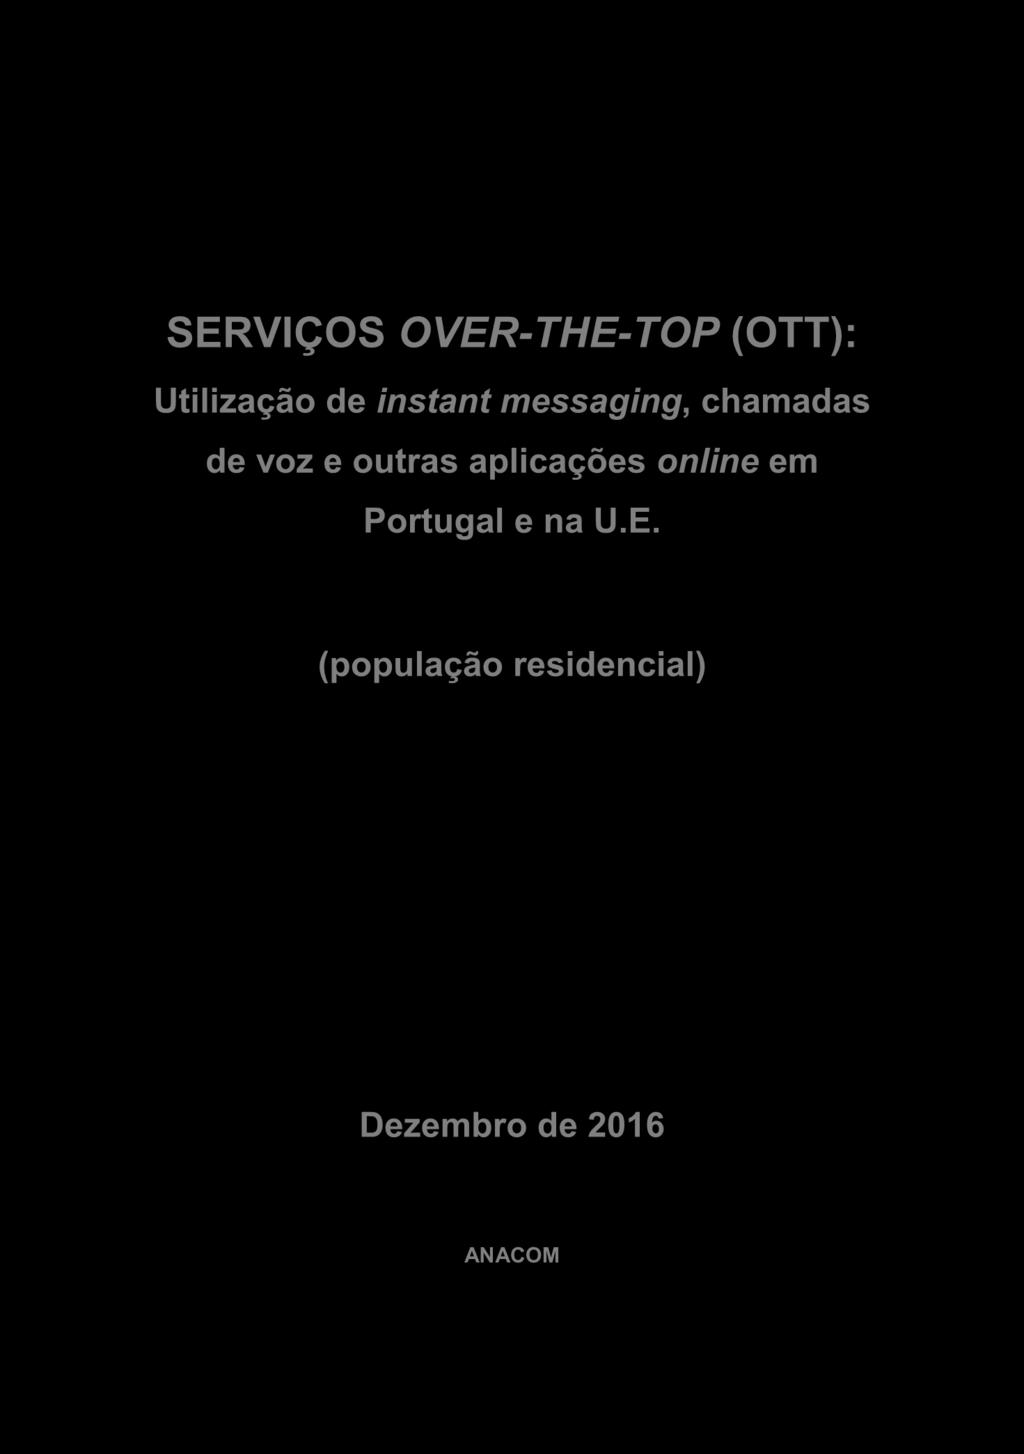 aplicações online em Portugal e na U.E.